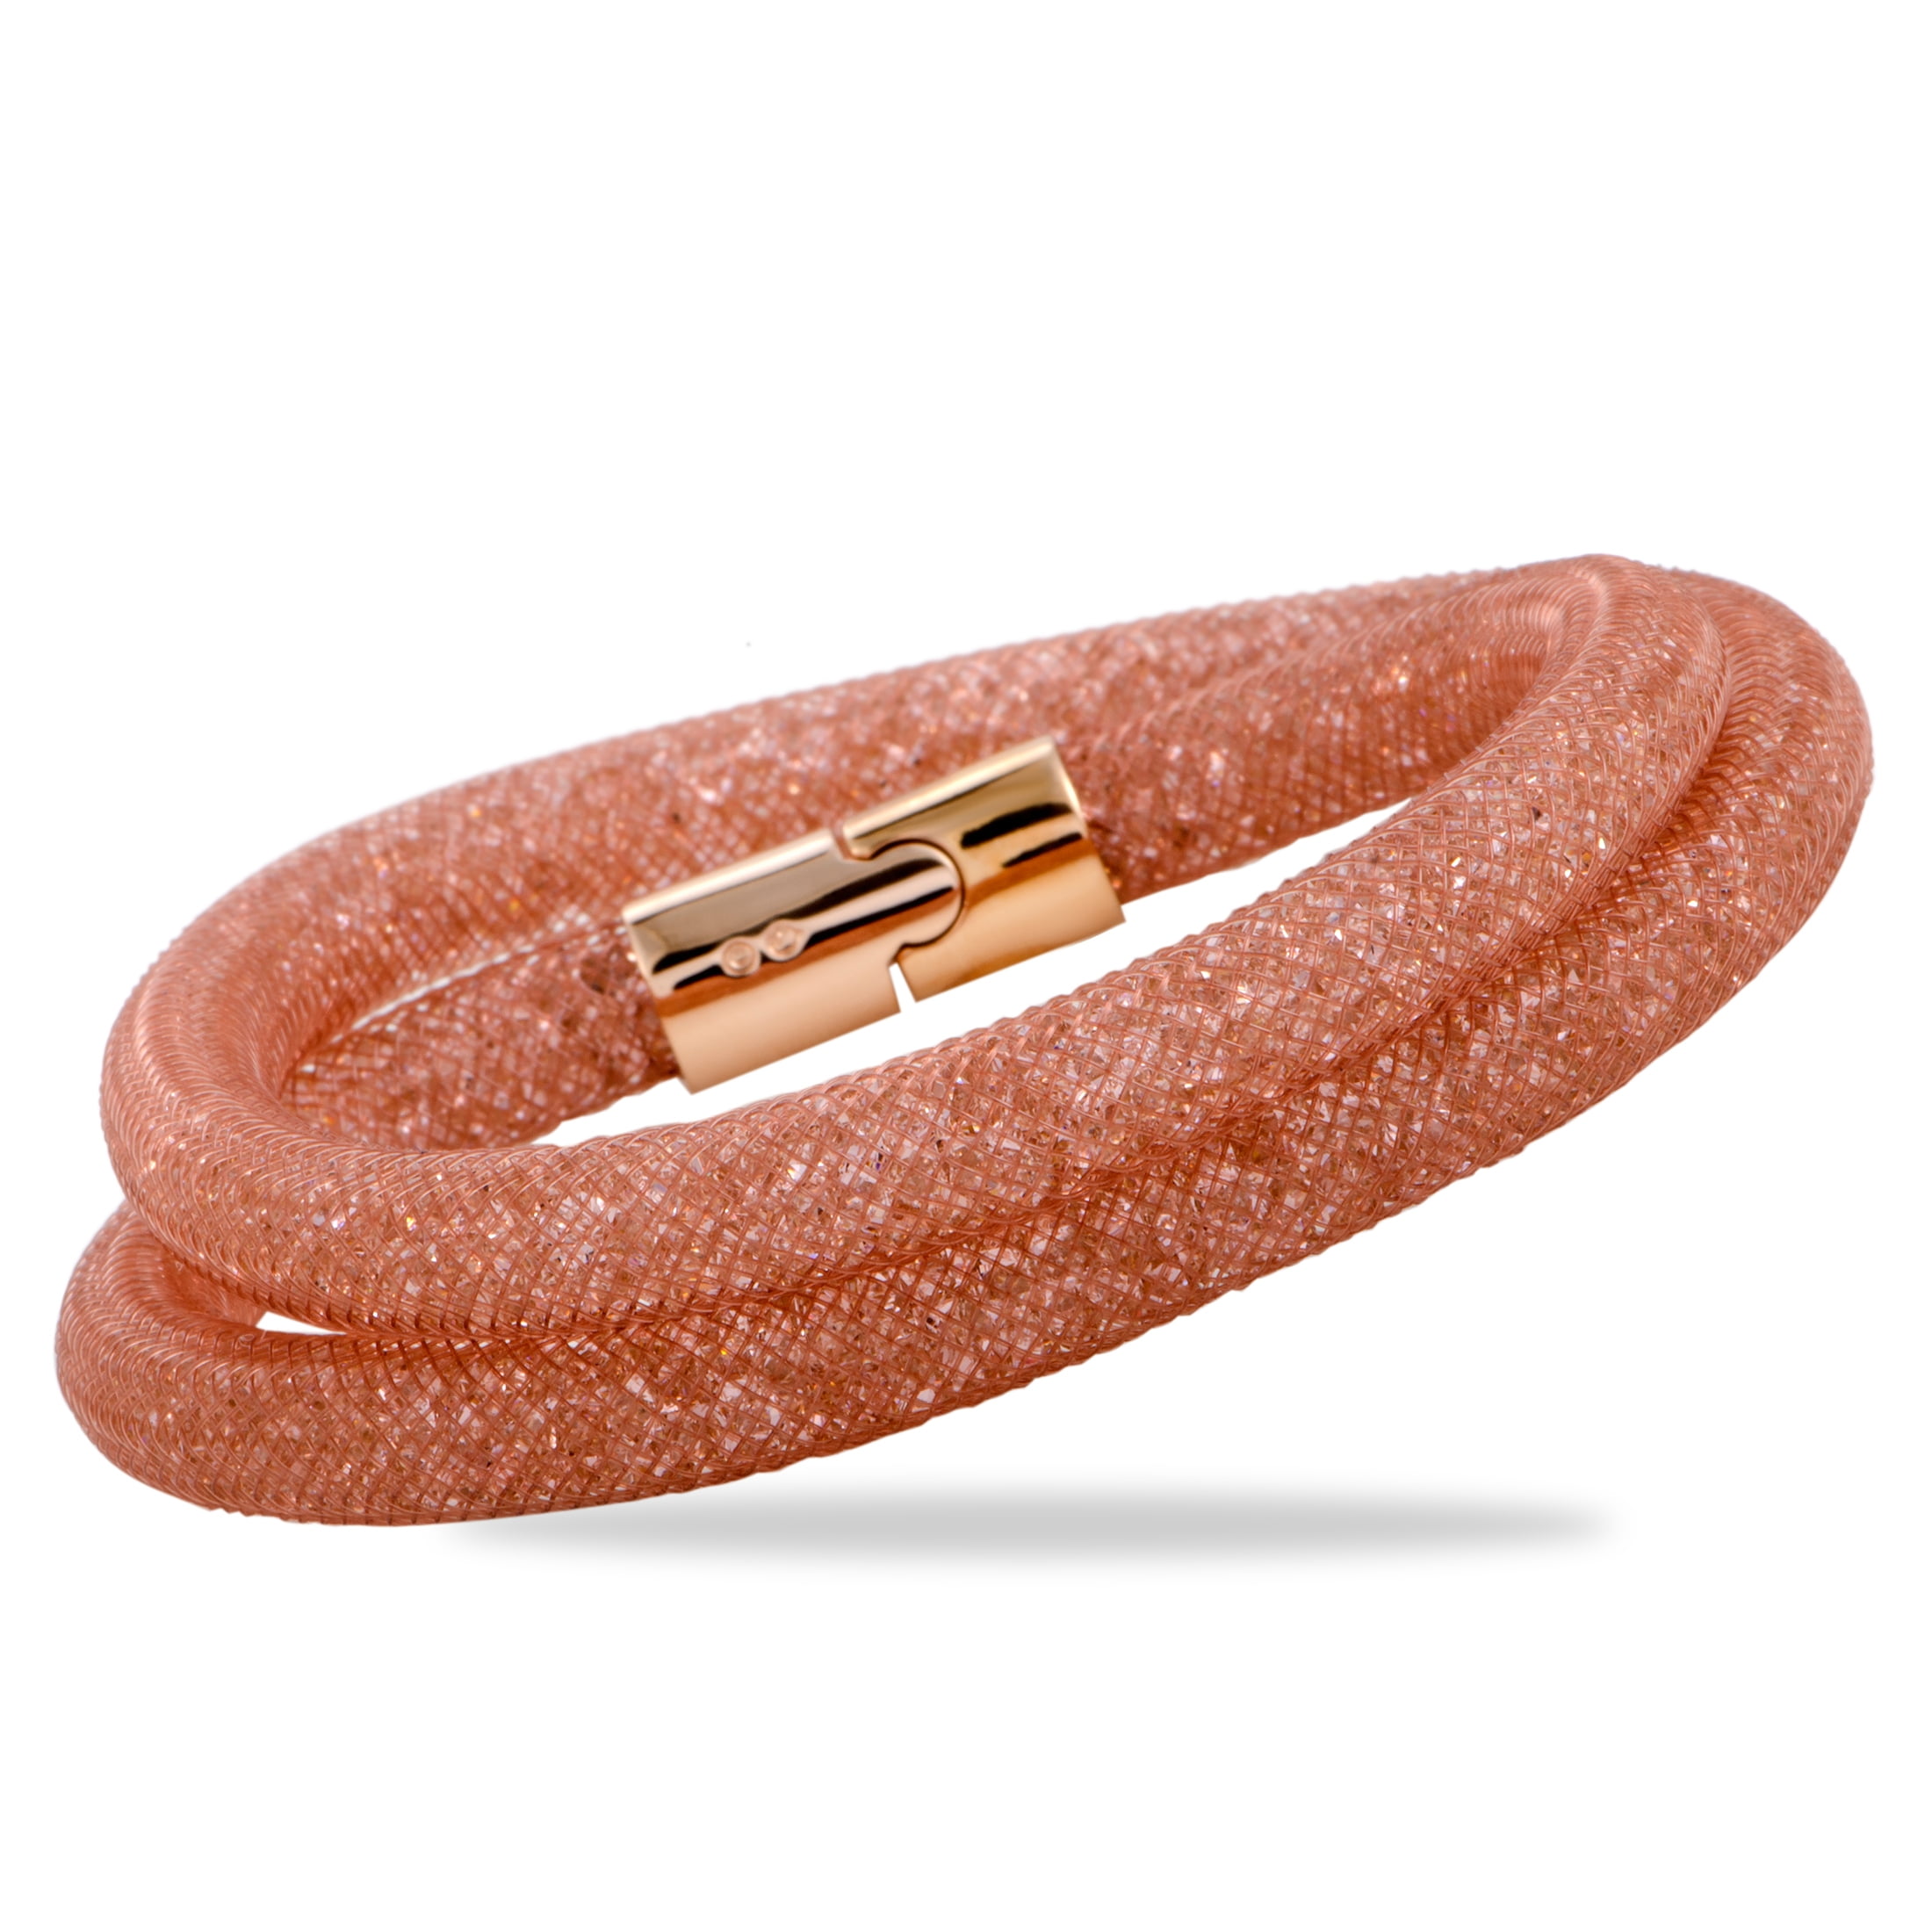 Buy Swarovski Stardust Bracelet Set at Amazonin